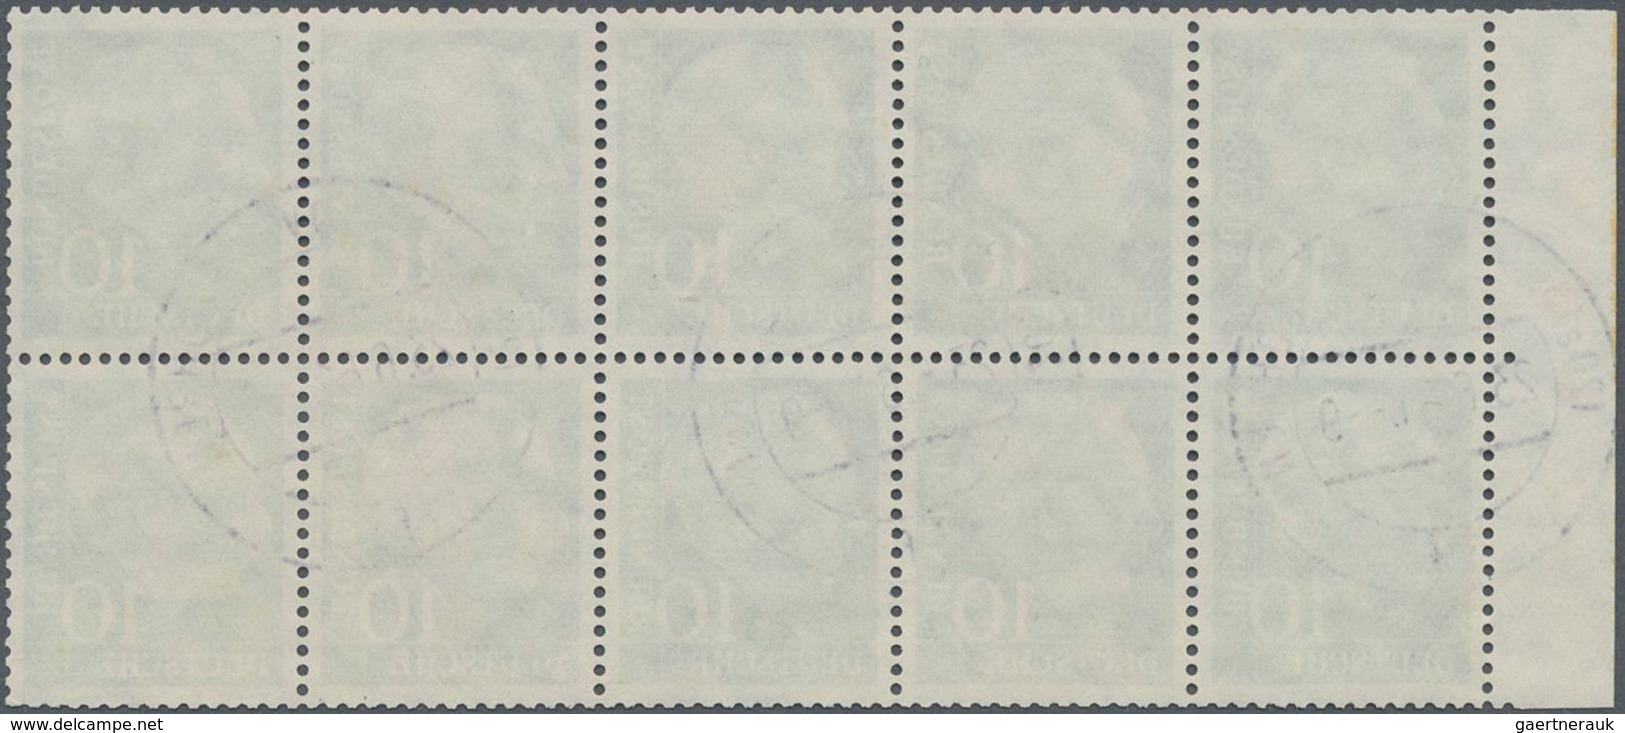 Bundesrepublik - Zusammendrucke: 1960, 10 Pfg. Heuss Heftchenblatt Mit Roter Bogenlaufnummer, Gestem - Se-Tenant